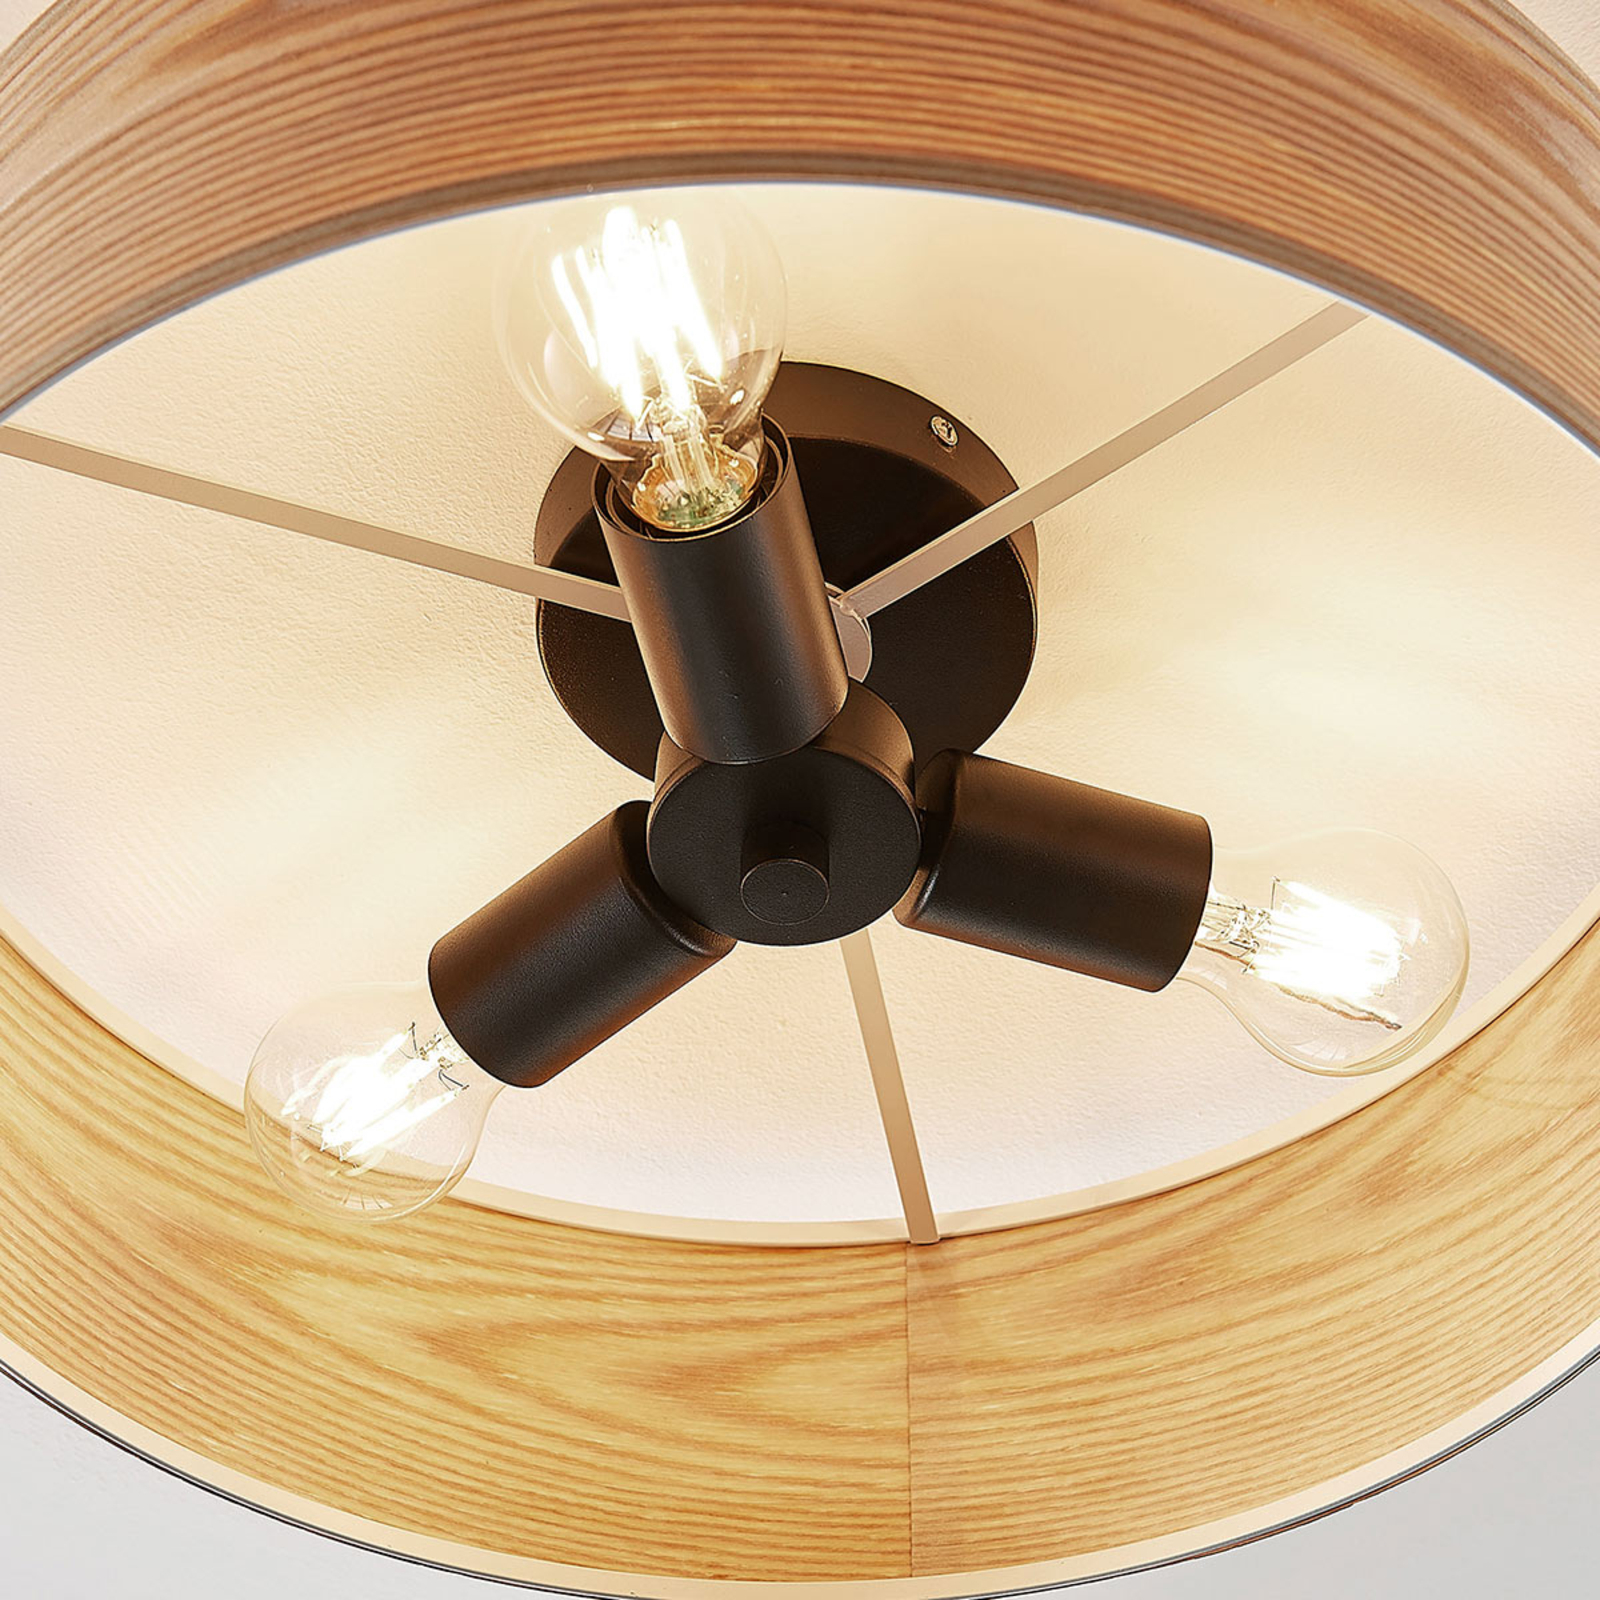 Drevená stropná lampa Dominic okrúhleho tvaru